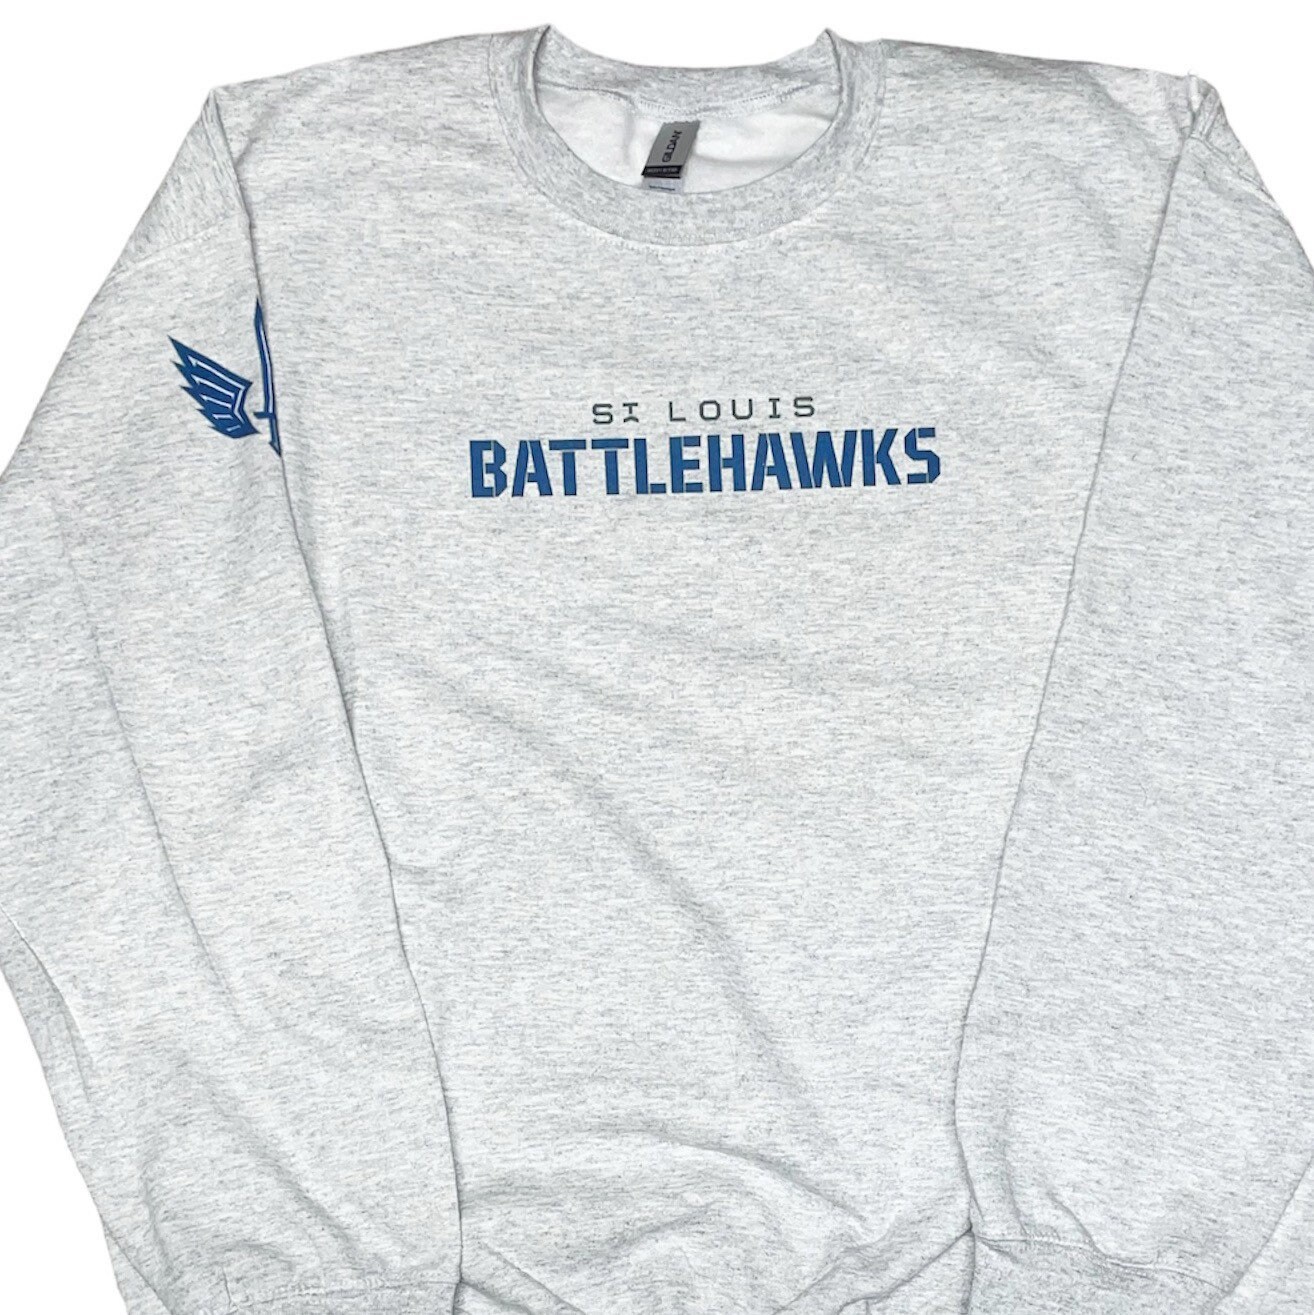 ST Louis battlehawks secondary logo shirt, hoodie, sweater, long